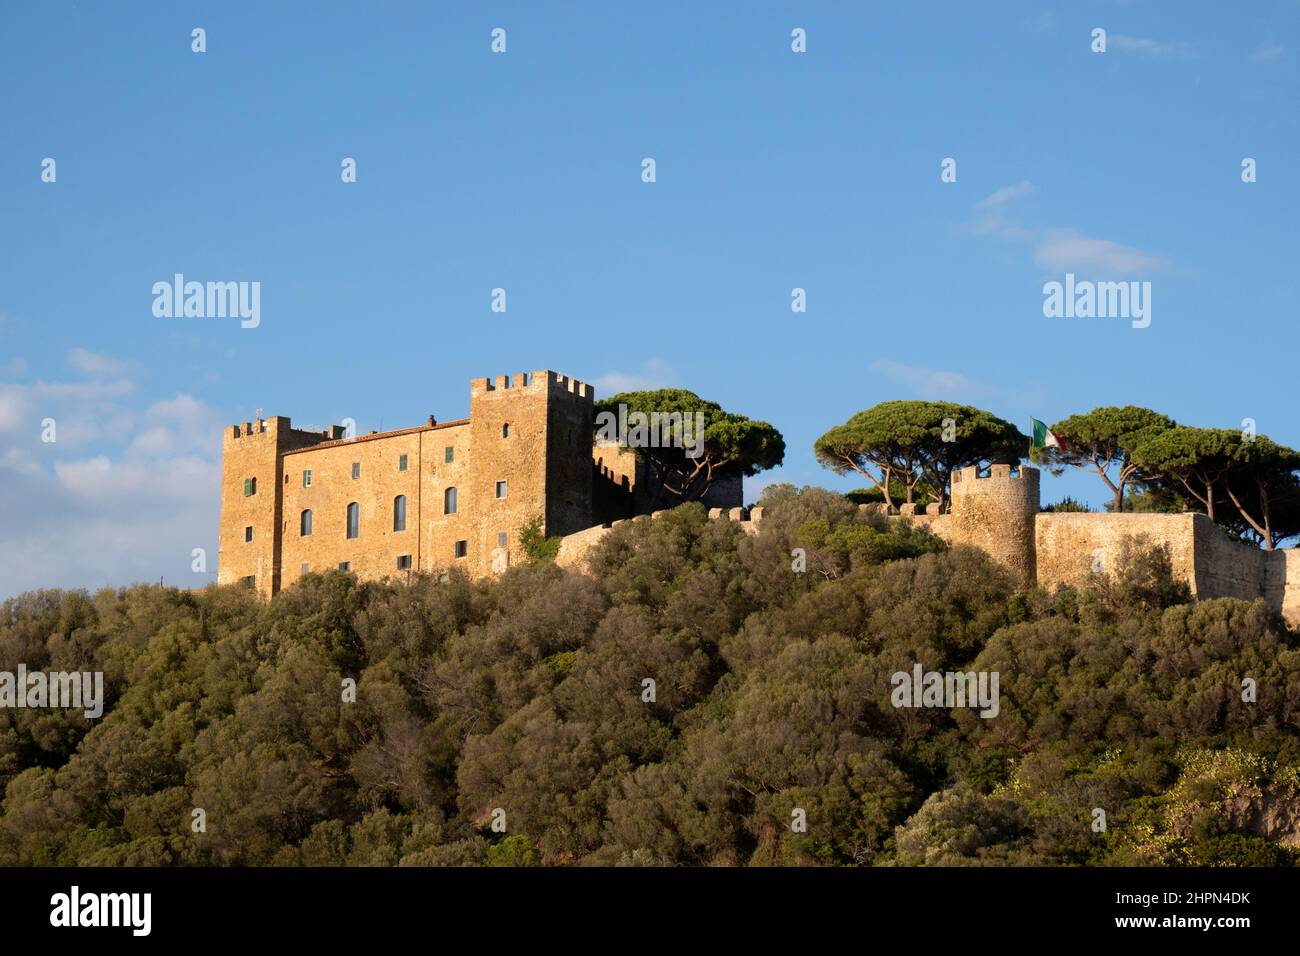 Castle, Castiglione della Pescaia, Grosseto province, Tuscany, Italy, Europe Stock Photo